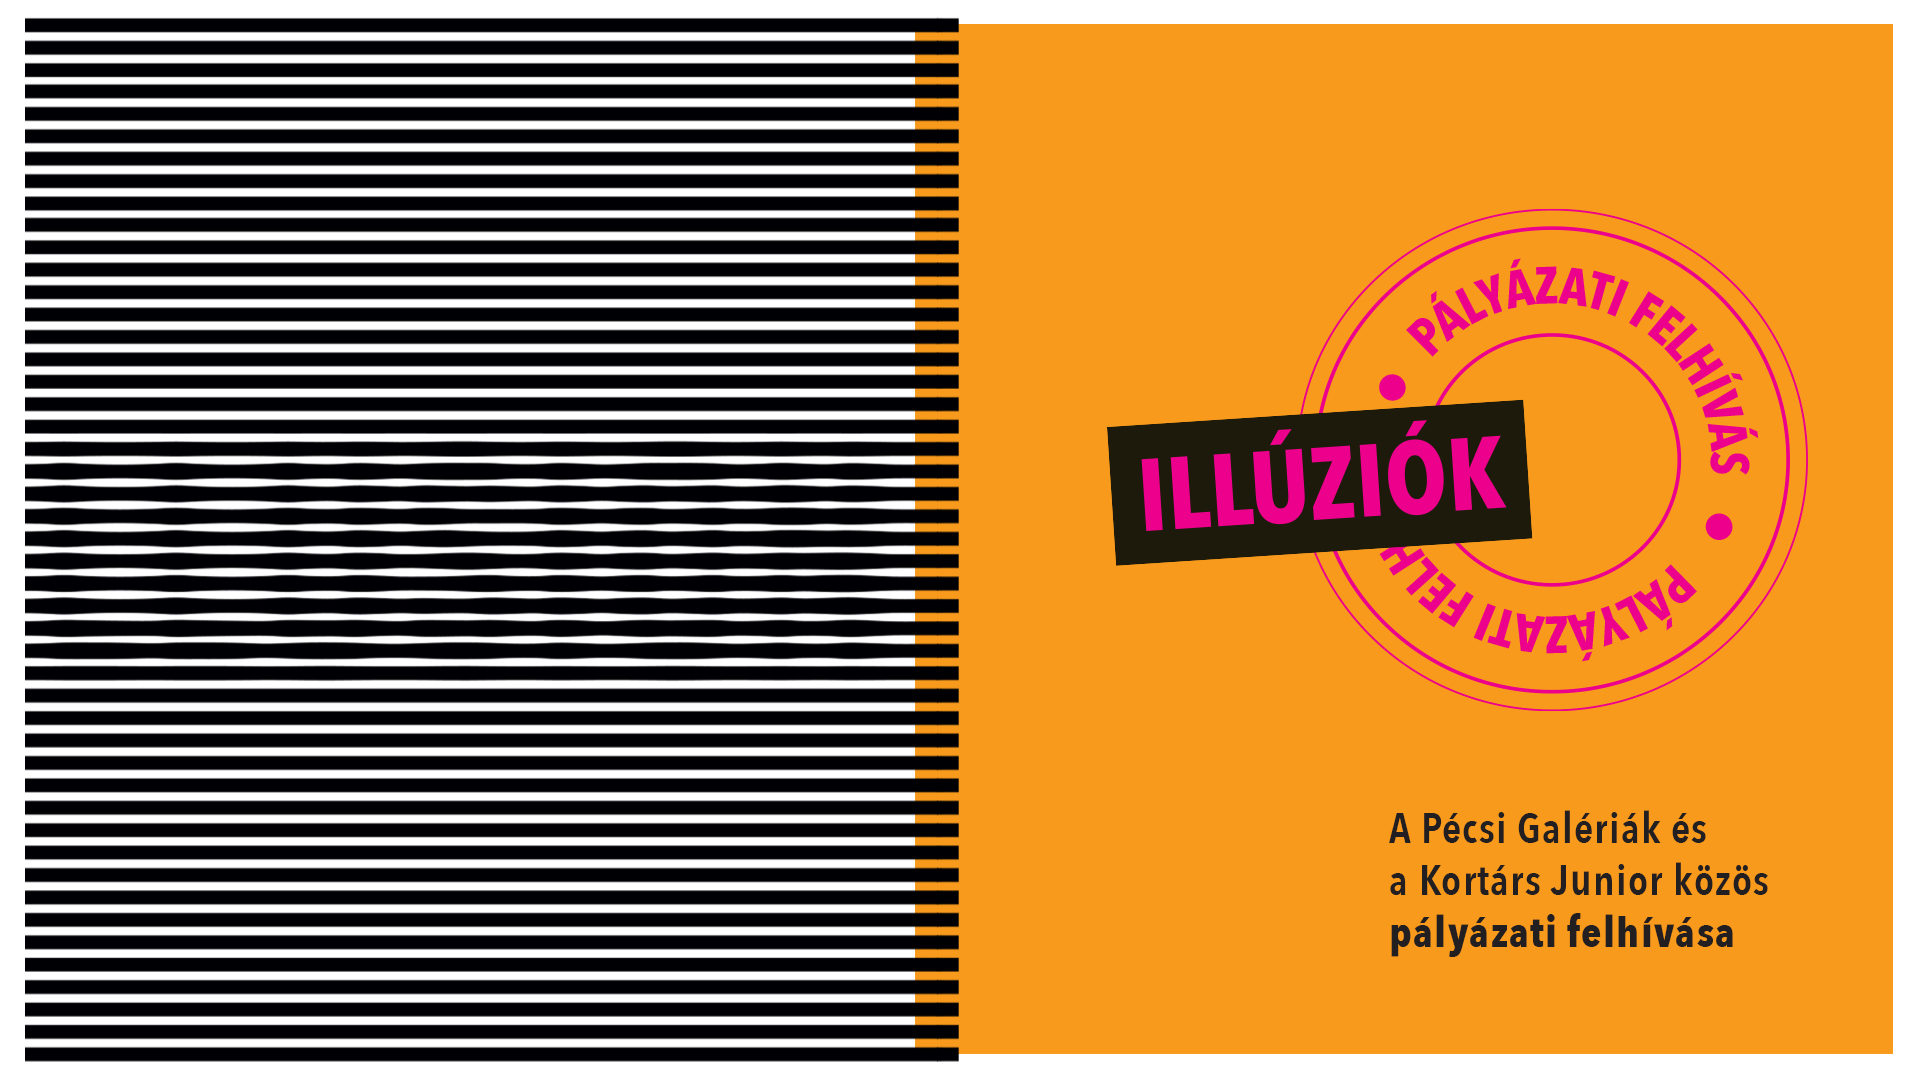 illuziok-palyazat-1920-1080